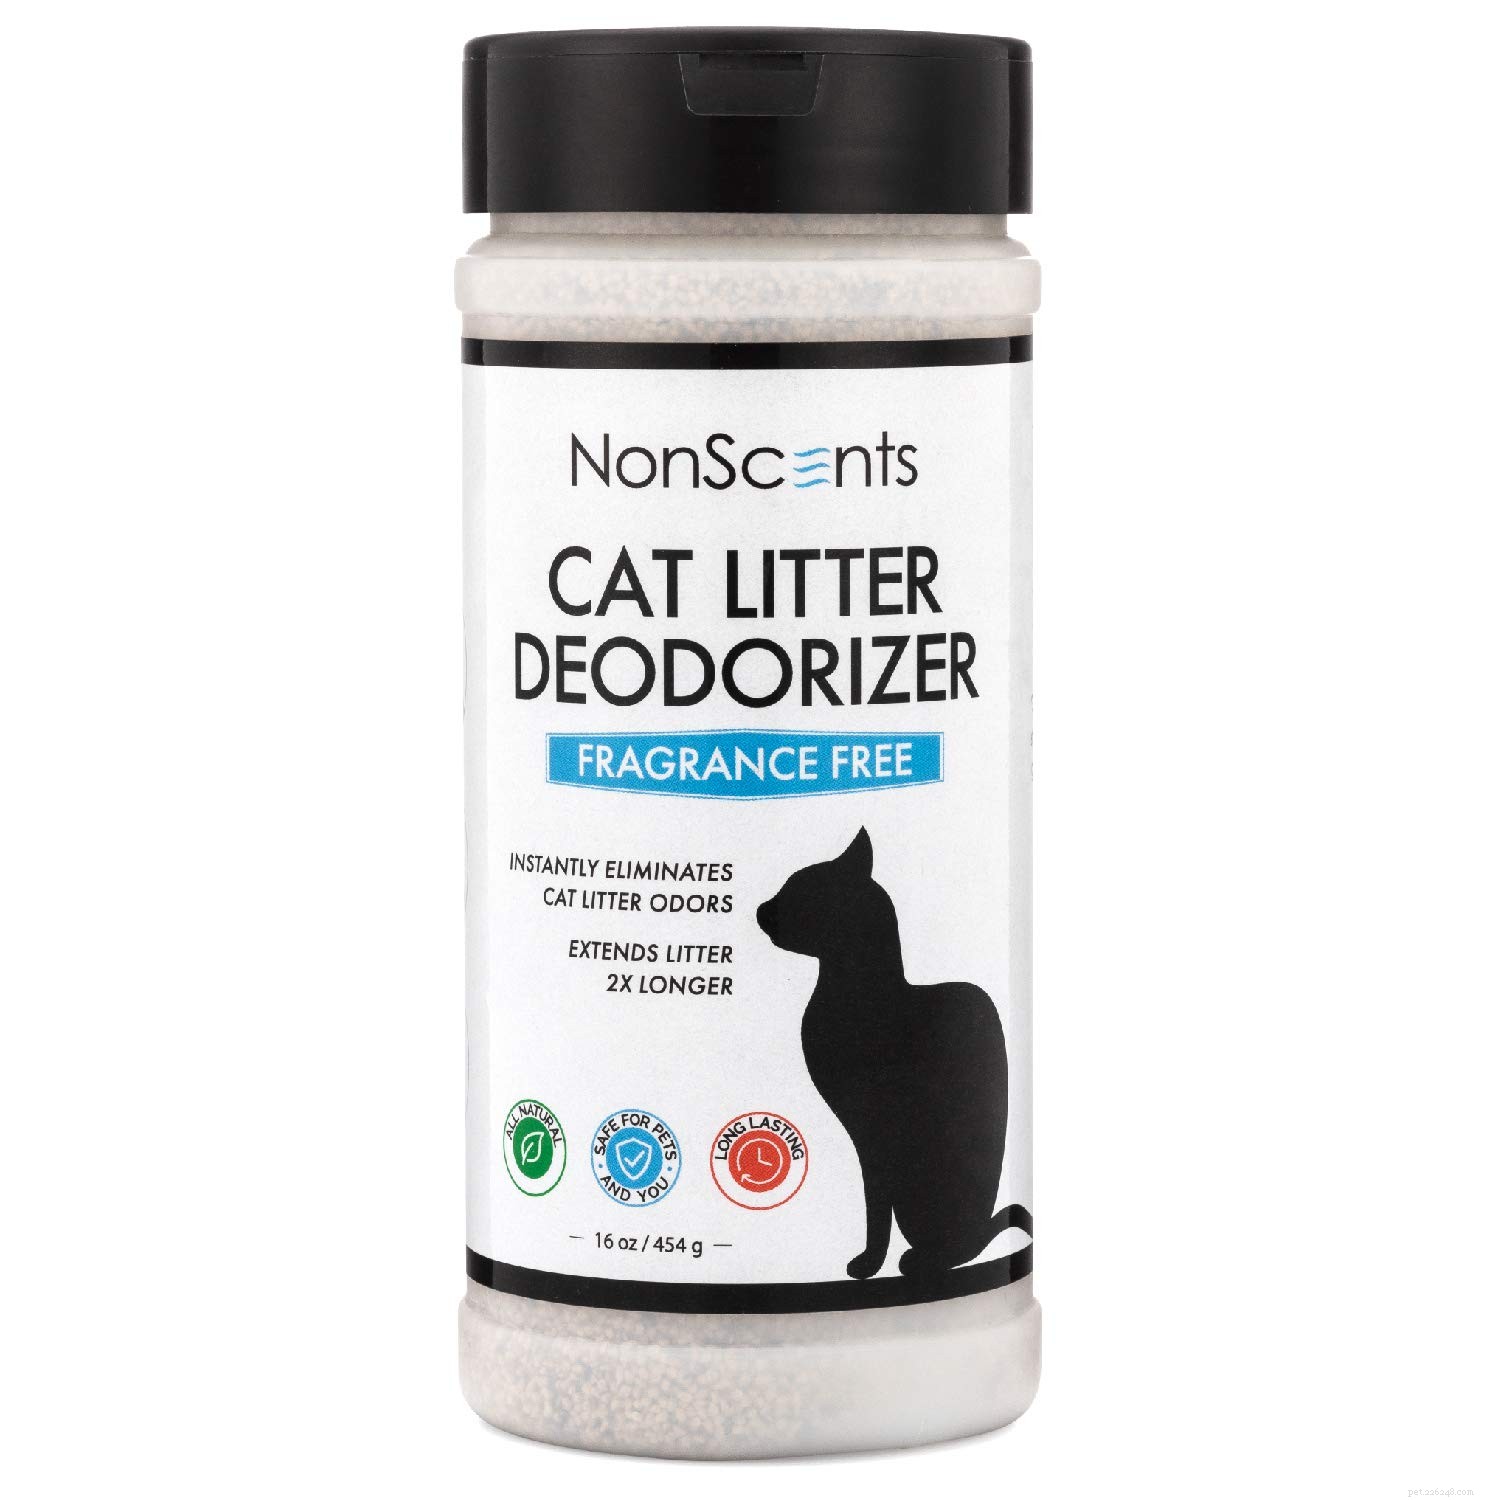 I migliori deodoranti per lettiere per gatti